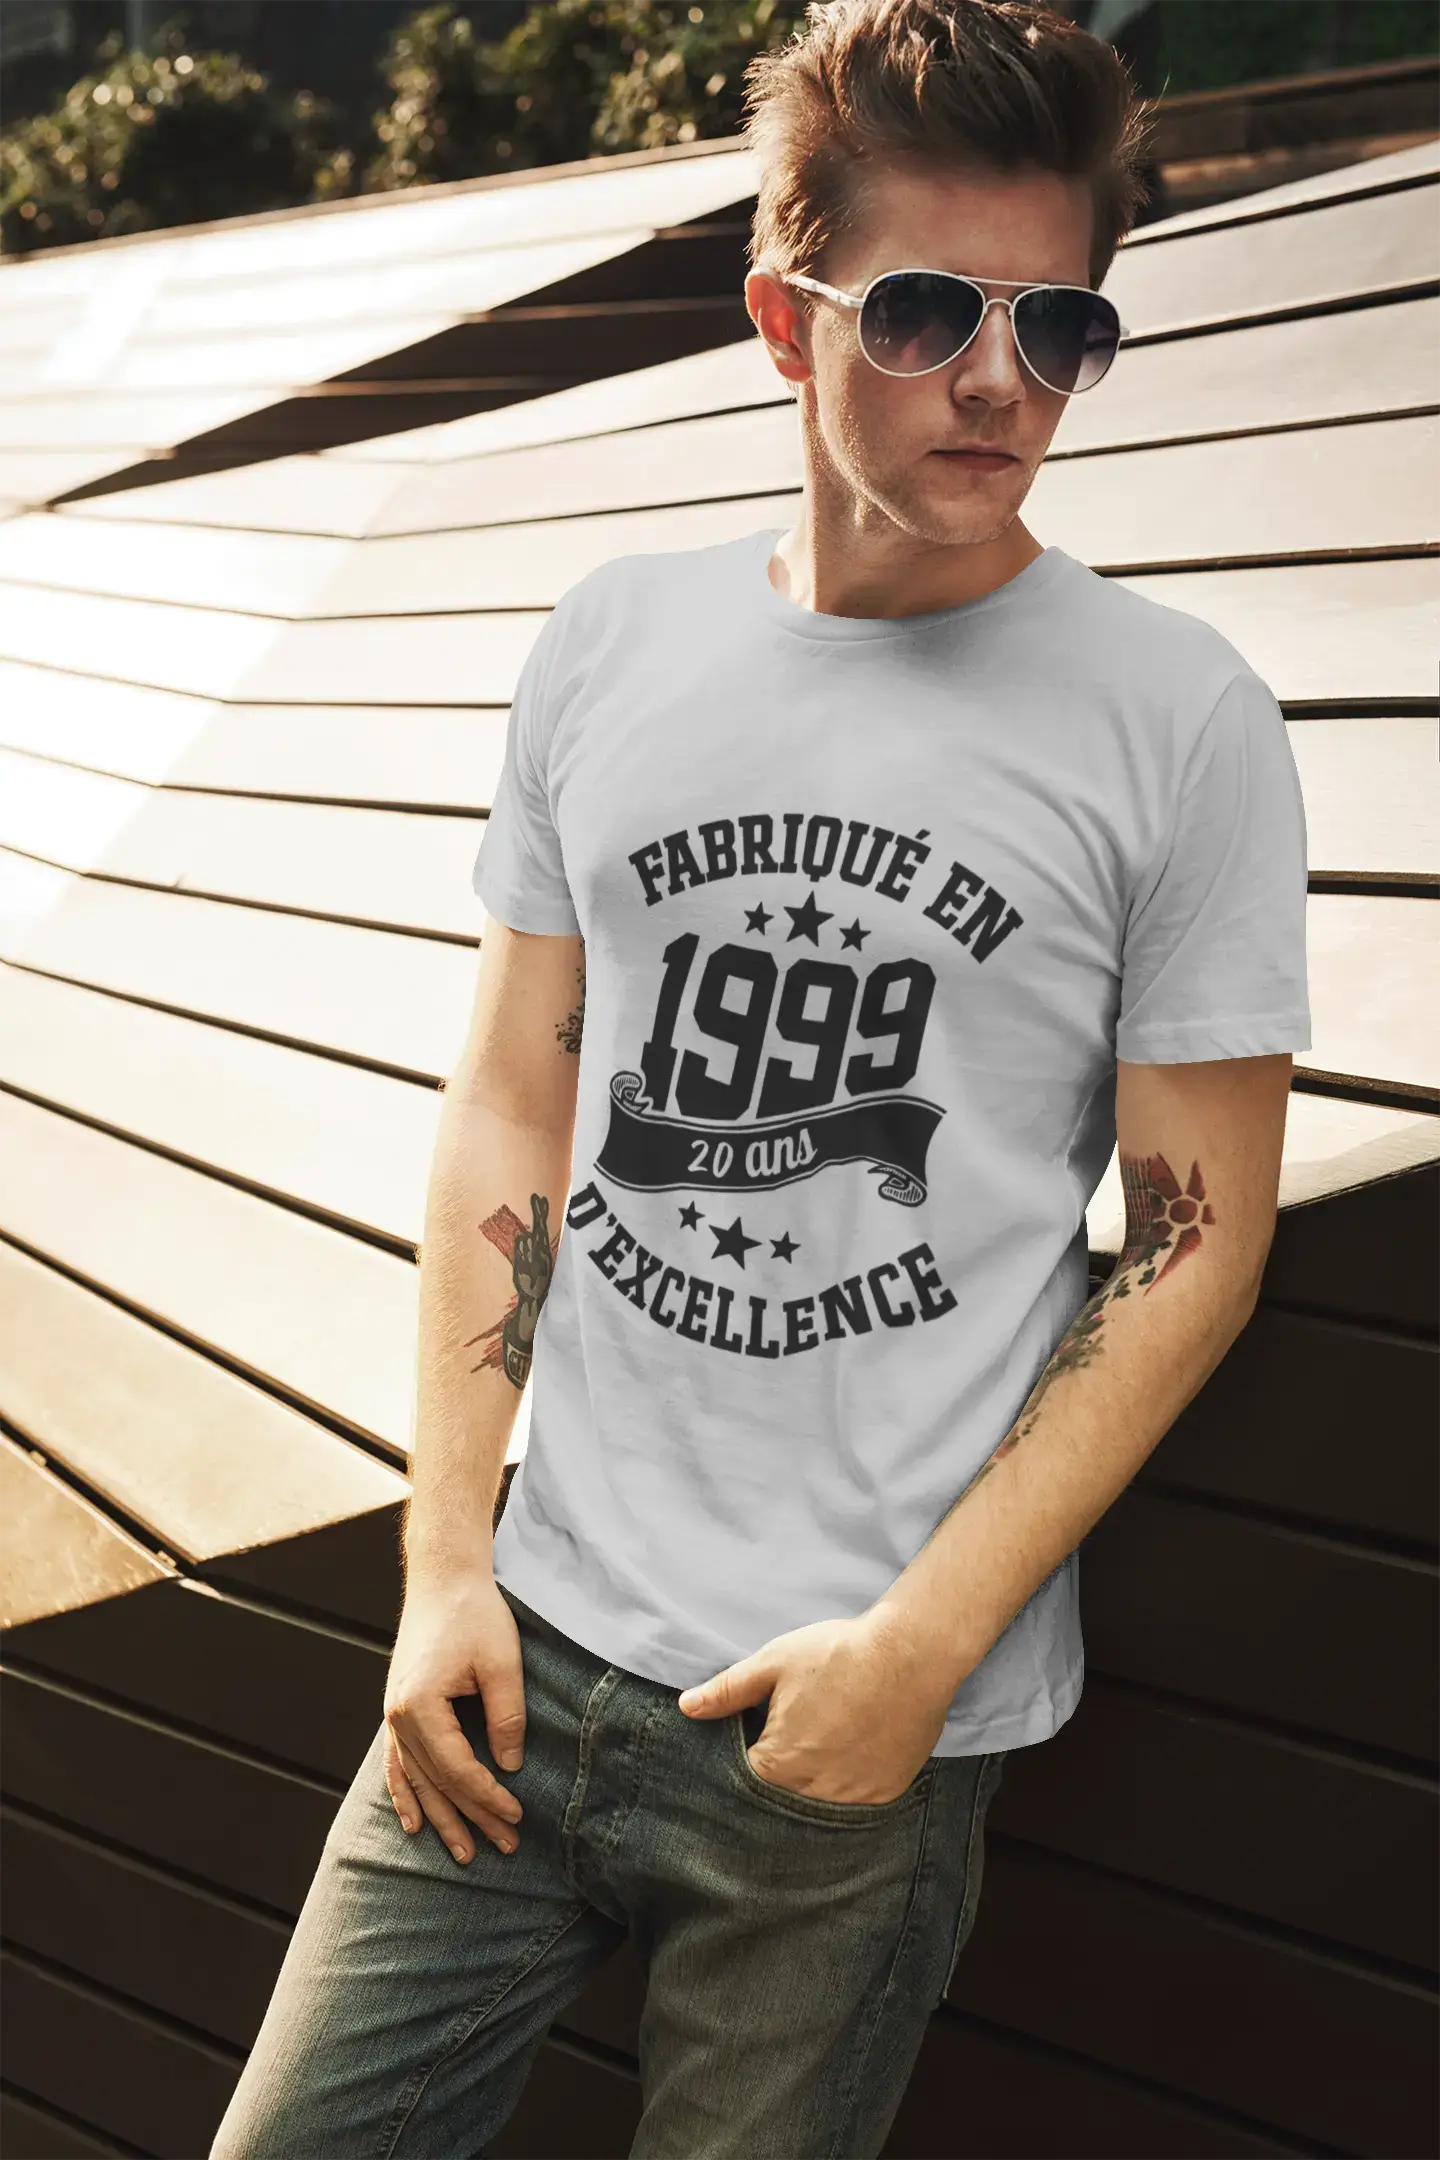 ULTRABASIC – Hergestellt im Jahr 1999, 20 Jahre alt. Original Unisex T-Shirt Grau